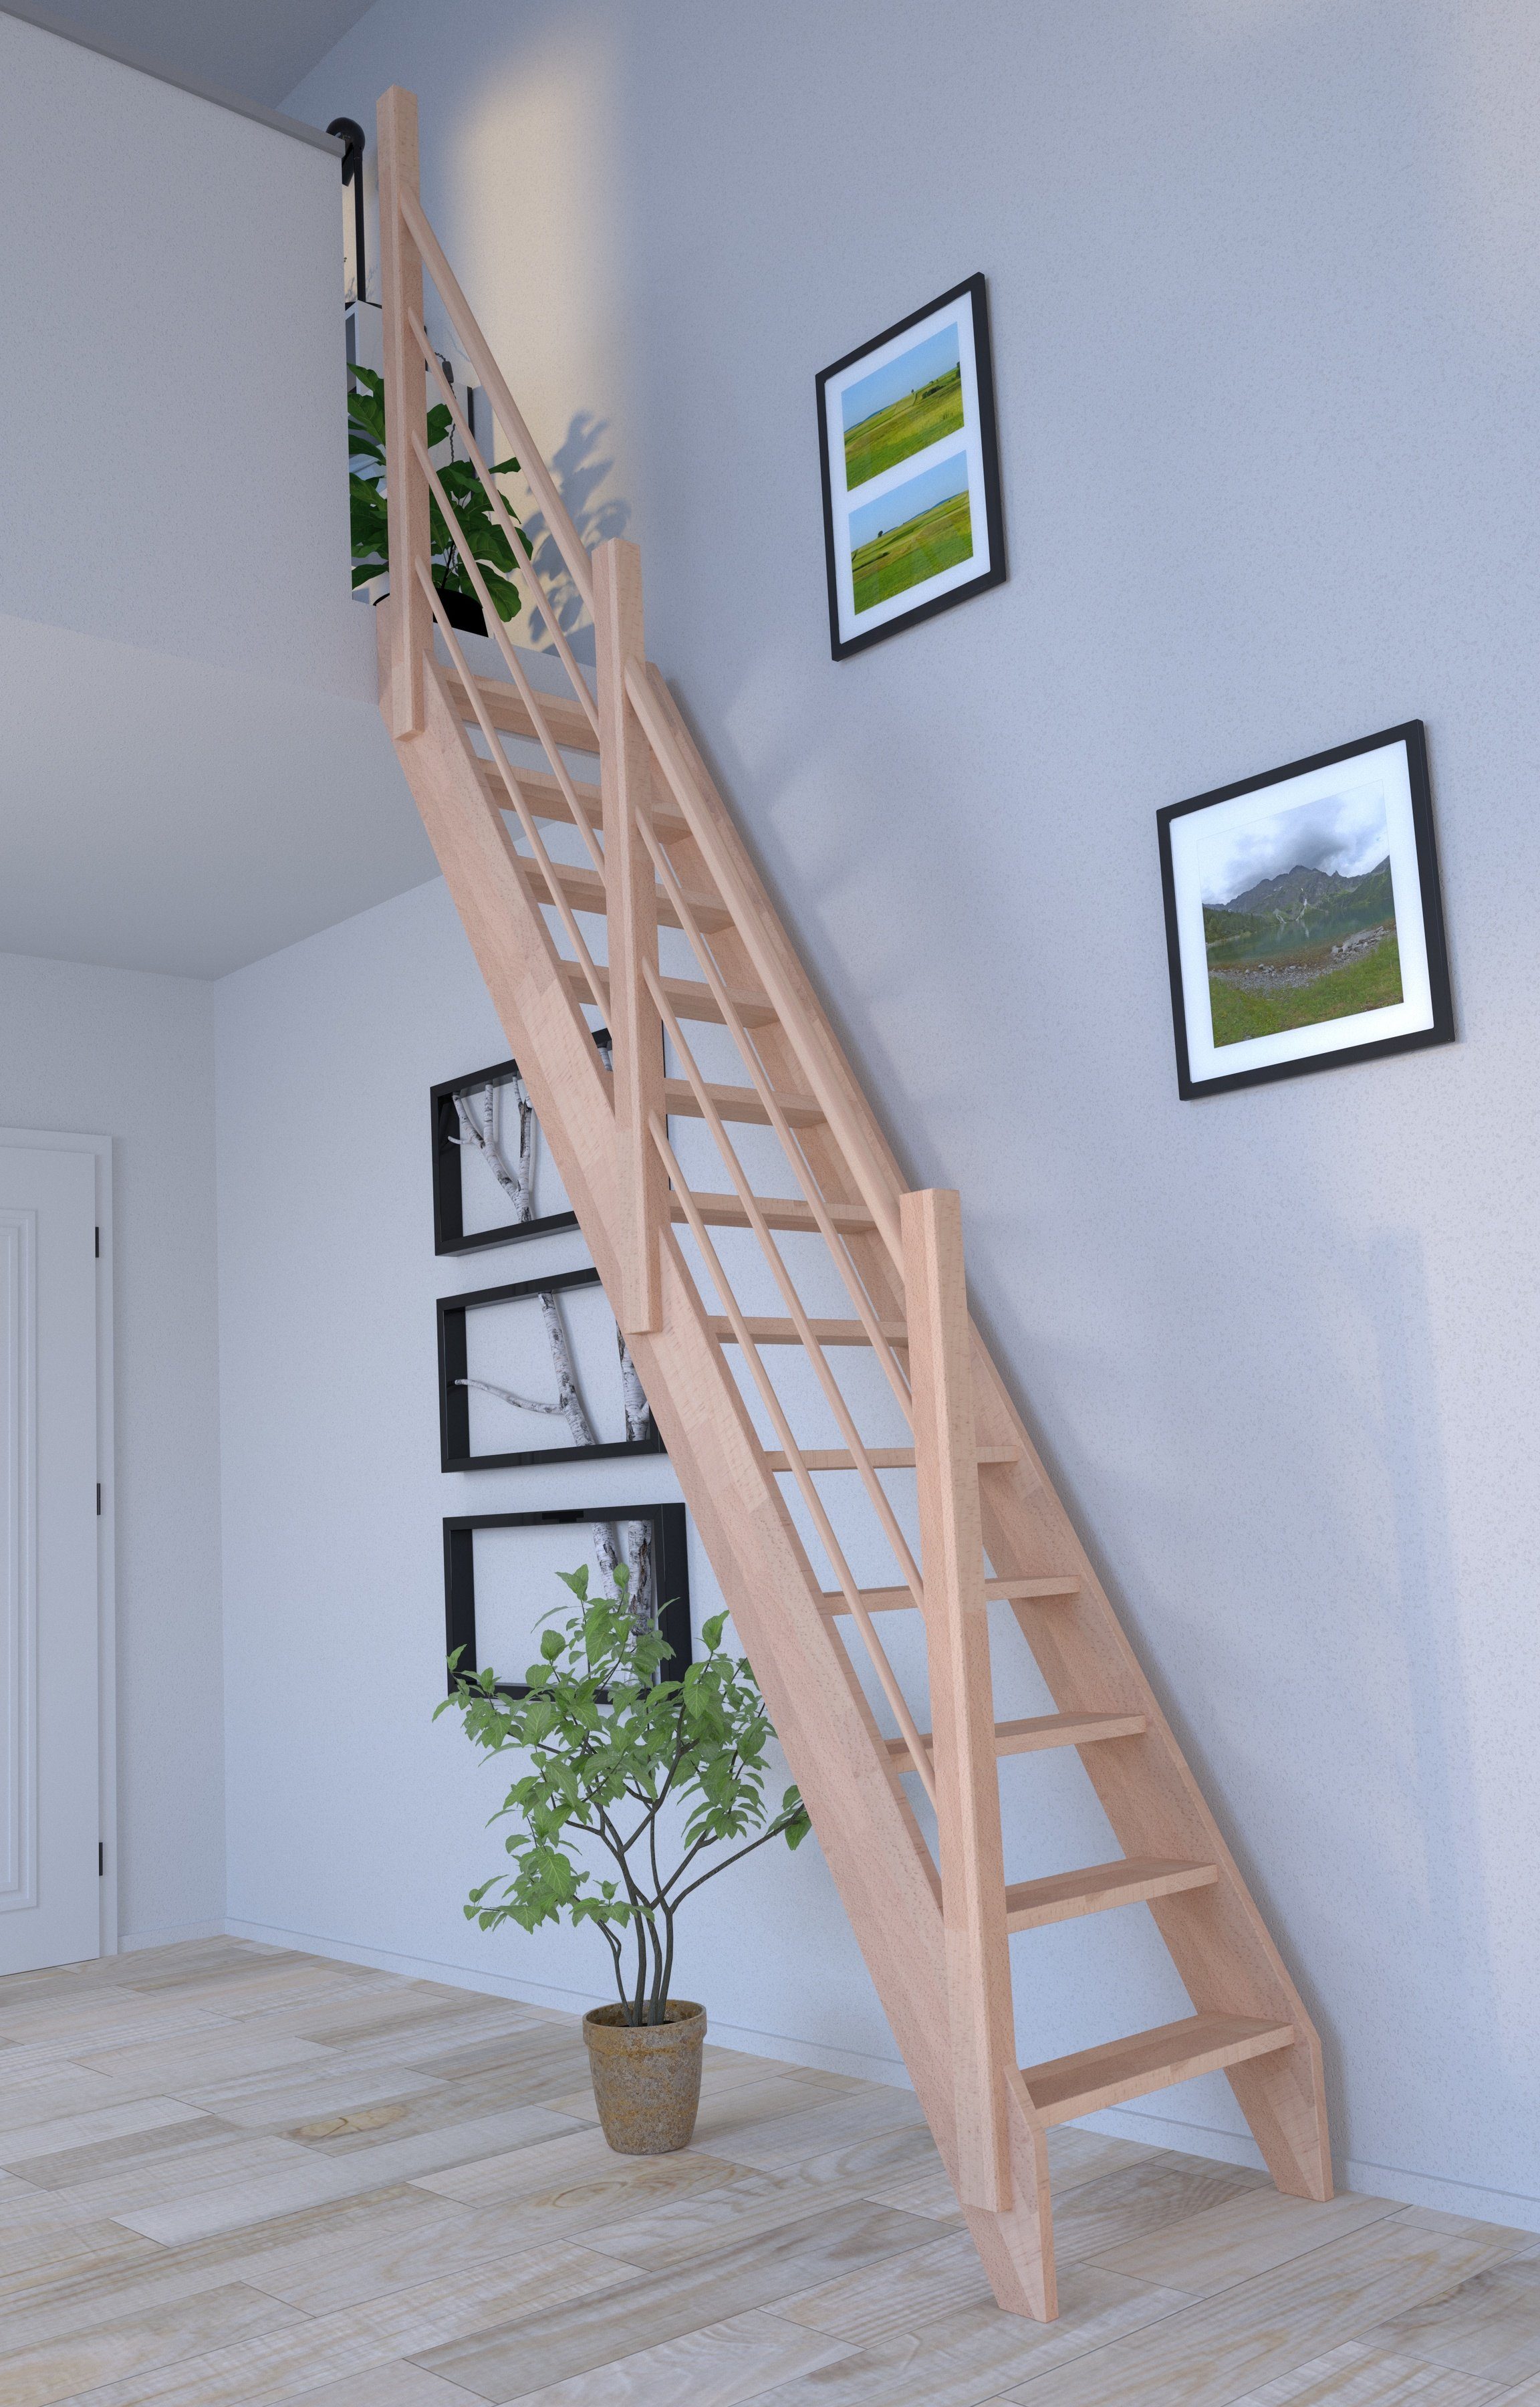 Starwood Raumspartreppe Buche Links, 3000, Design Holz-Holz Durchgehende Geländer Wangenteile offen, Stufen